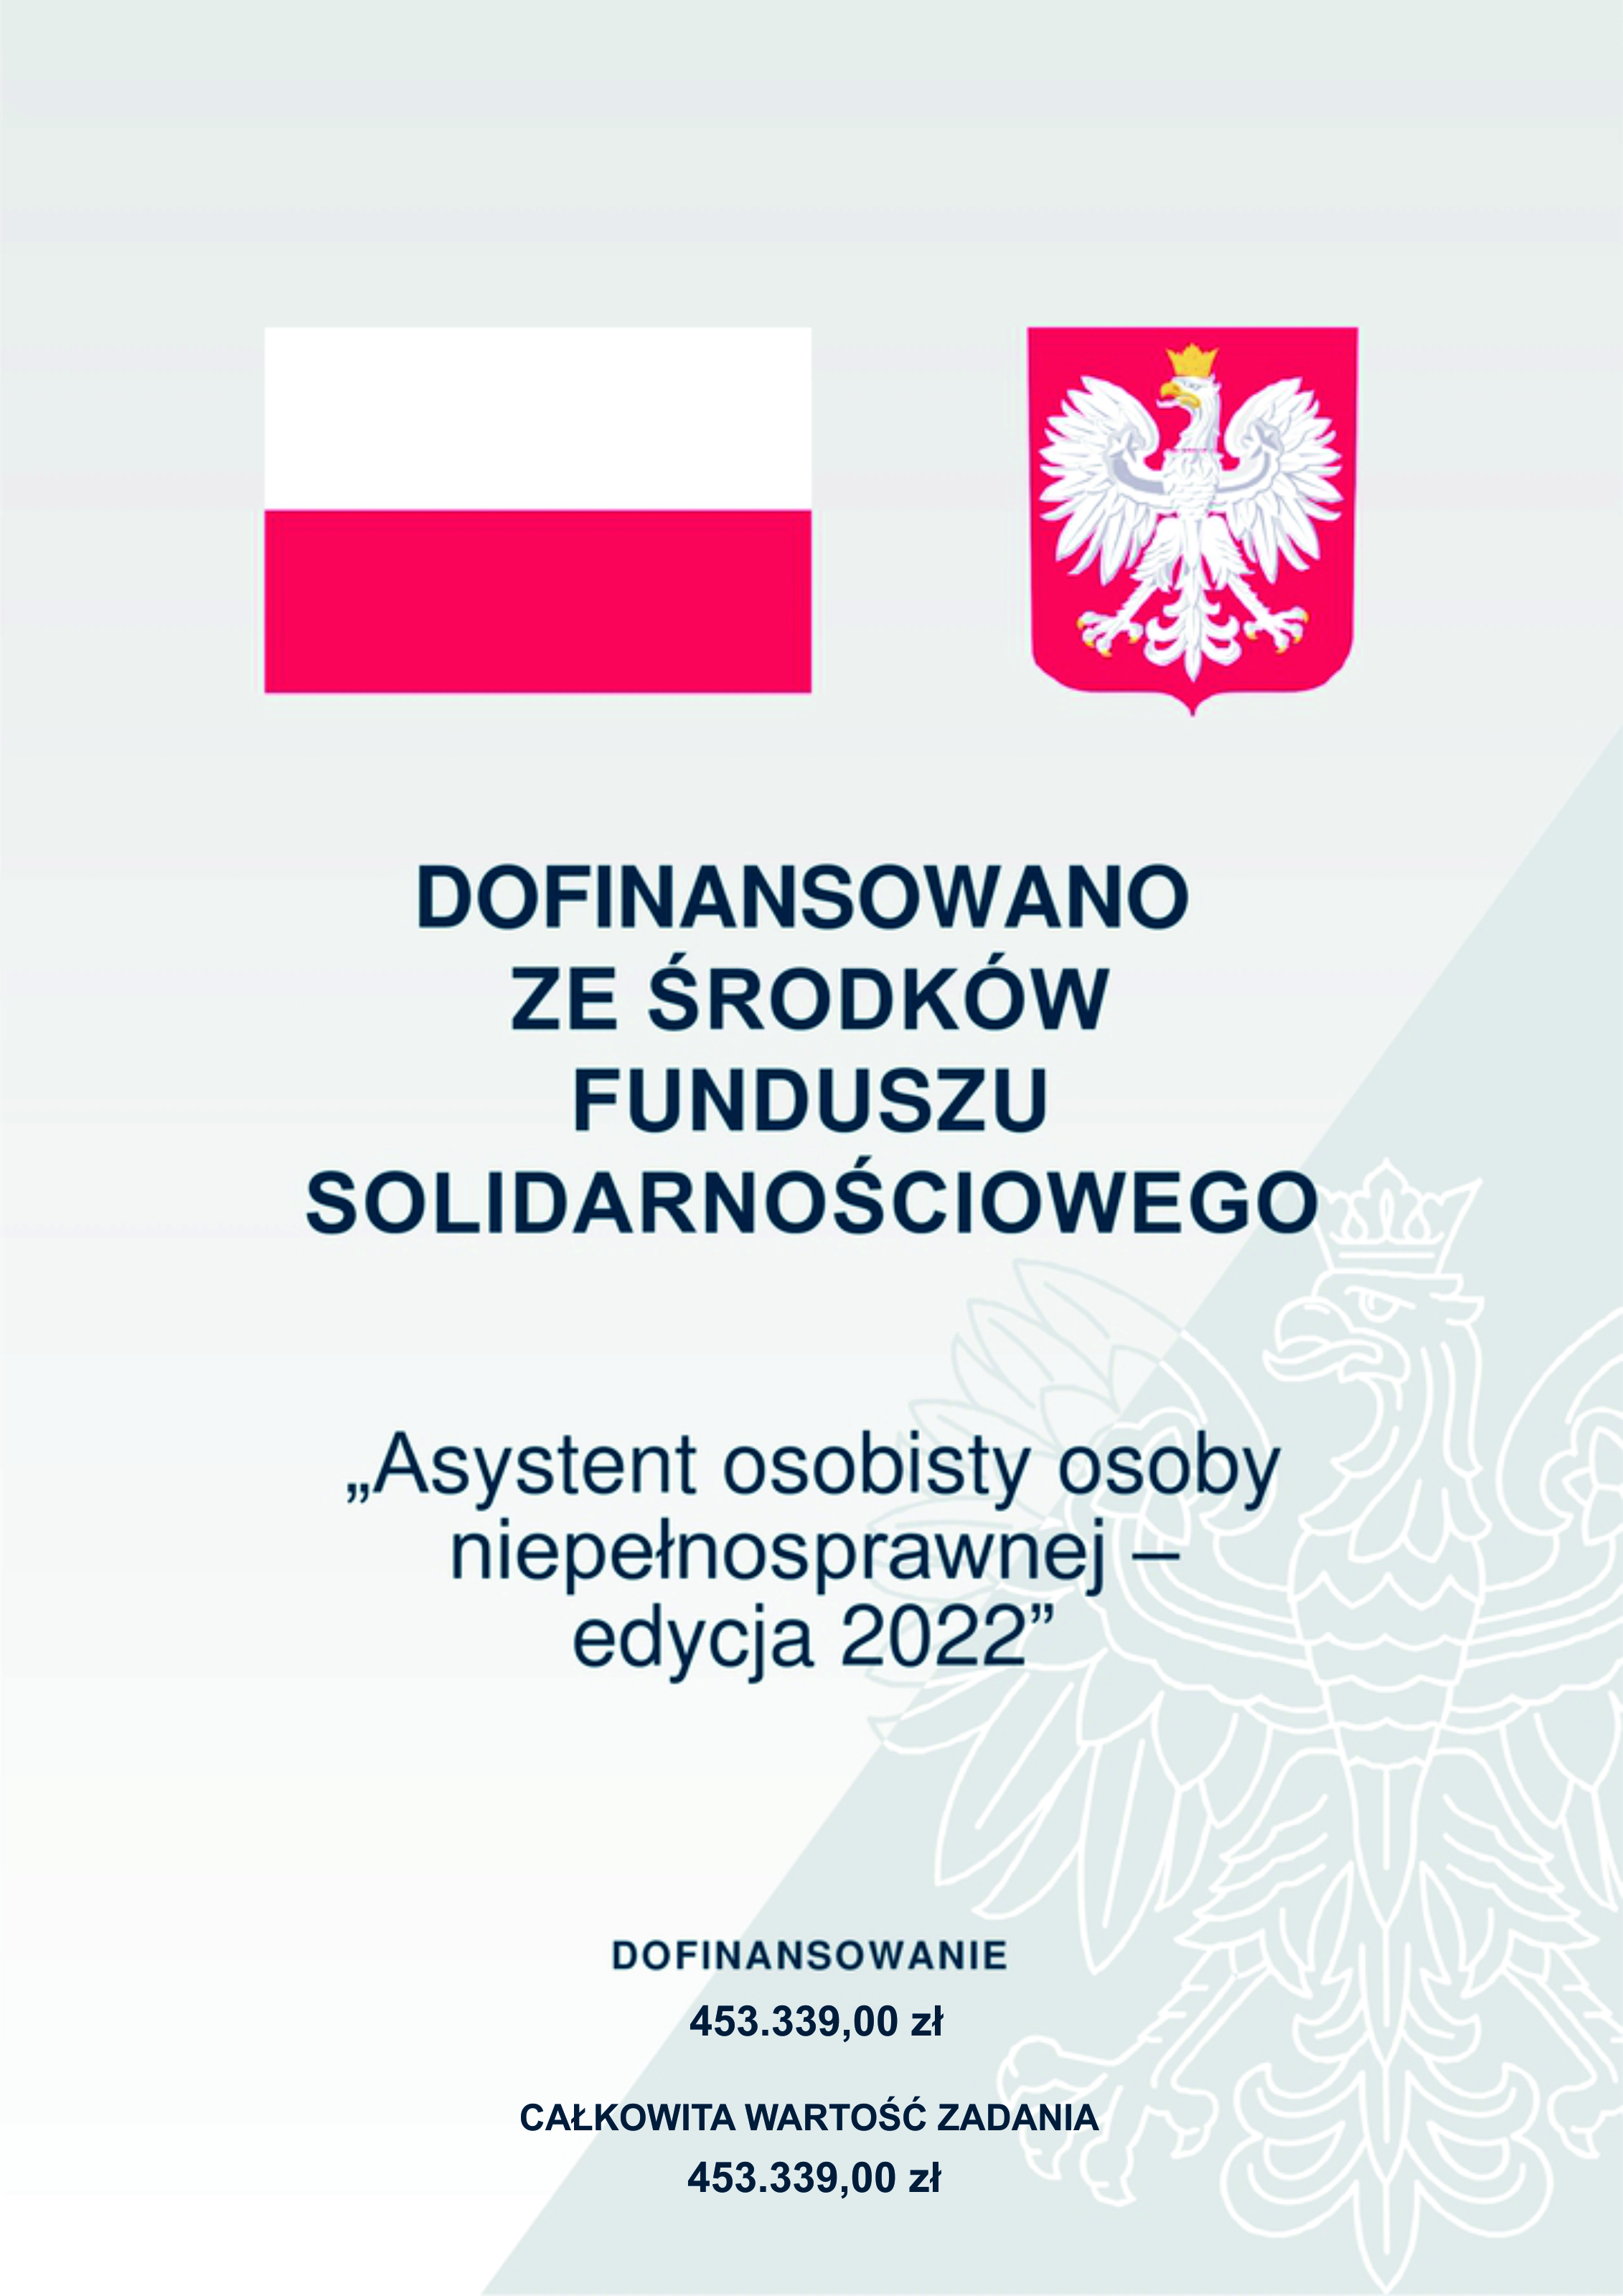 flaga, godło Polski wraz z informacją o kwocie dosfinansowania